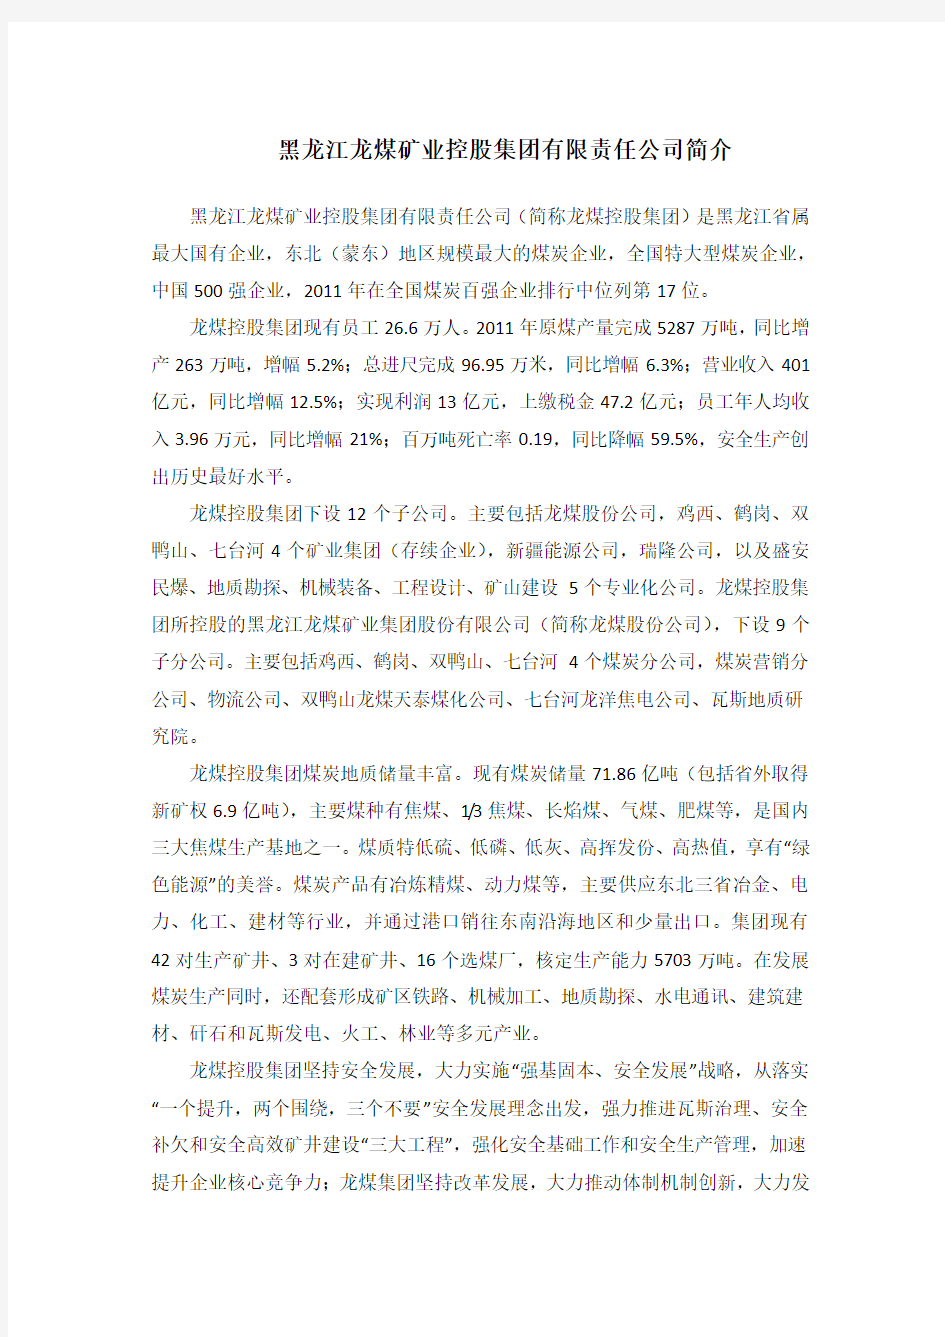 黑龙江龙煤矿业控股集团有限责任公司简介